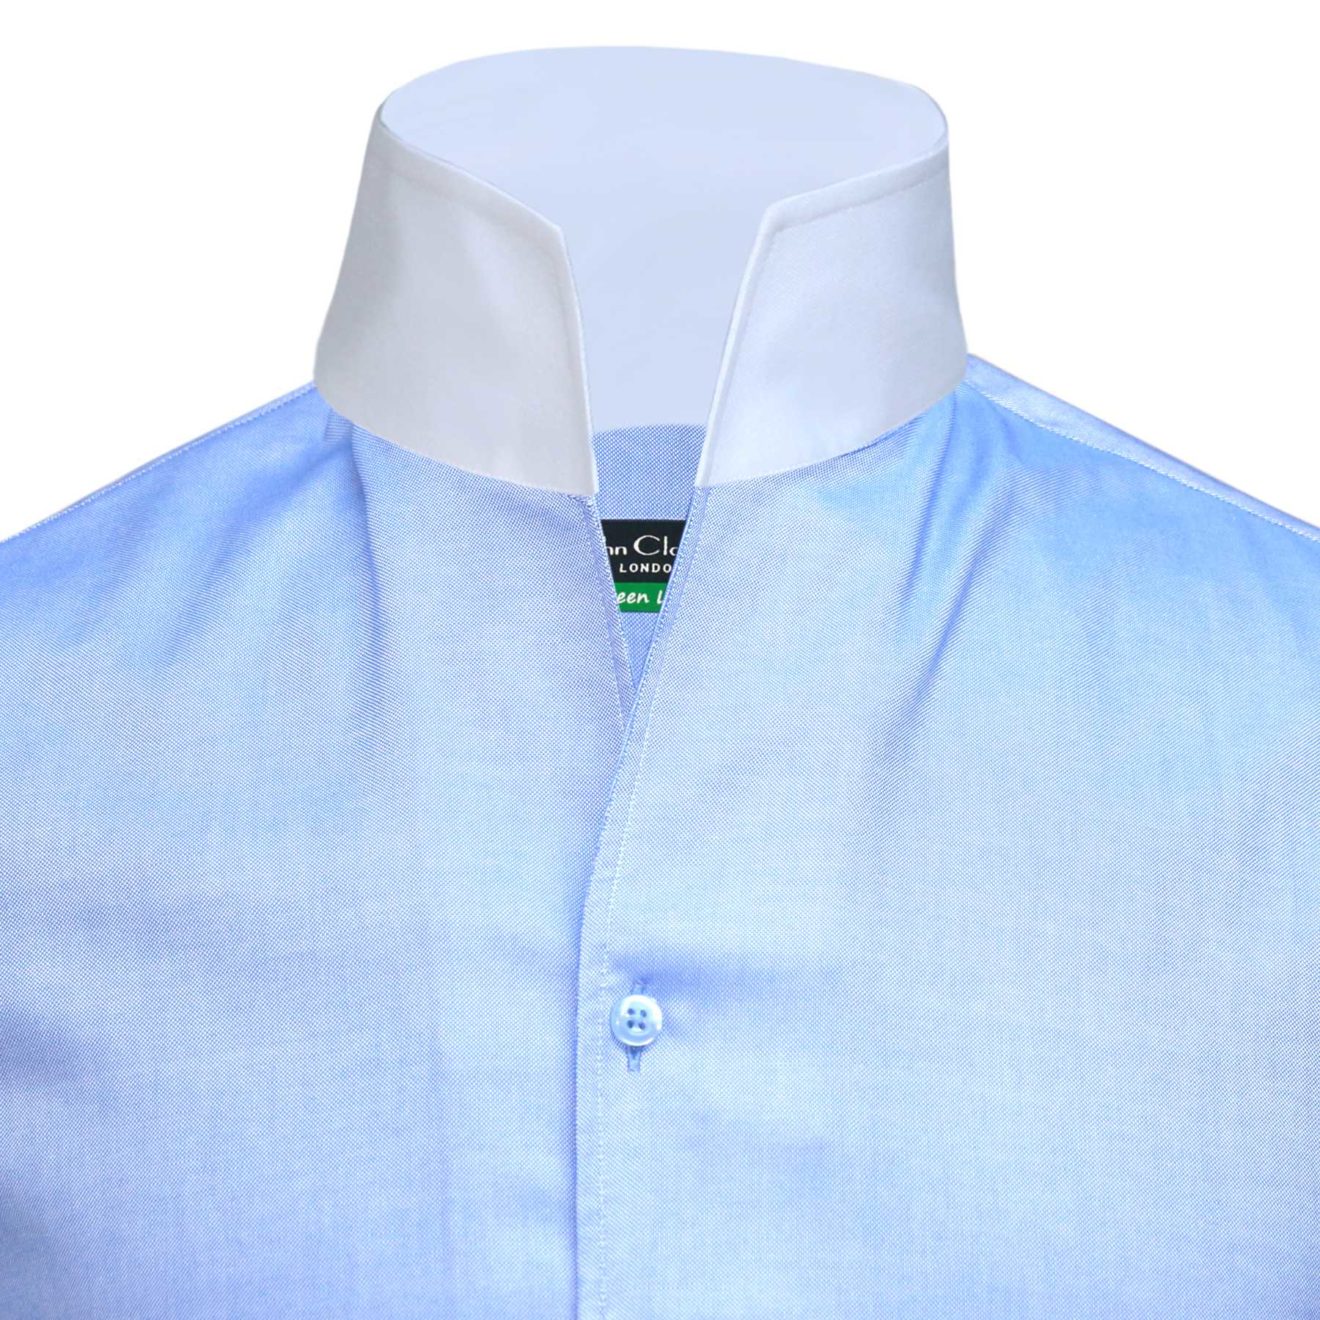 Blue High-Open Collar Shirt - John Clothier London